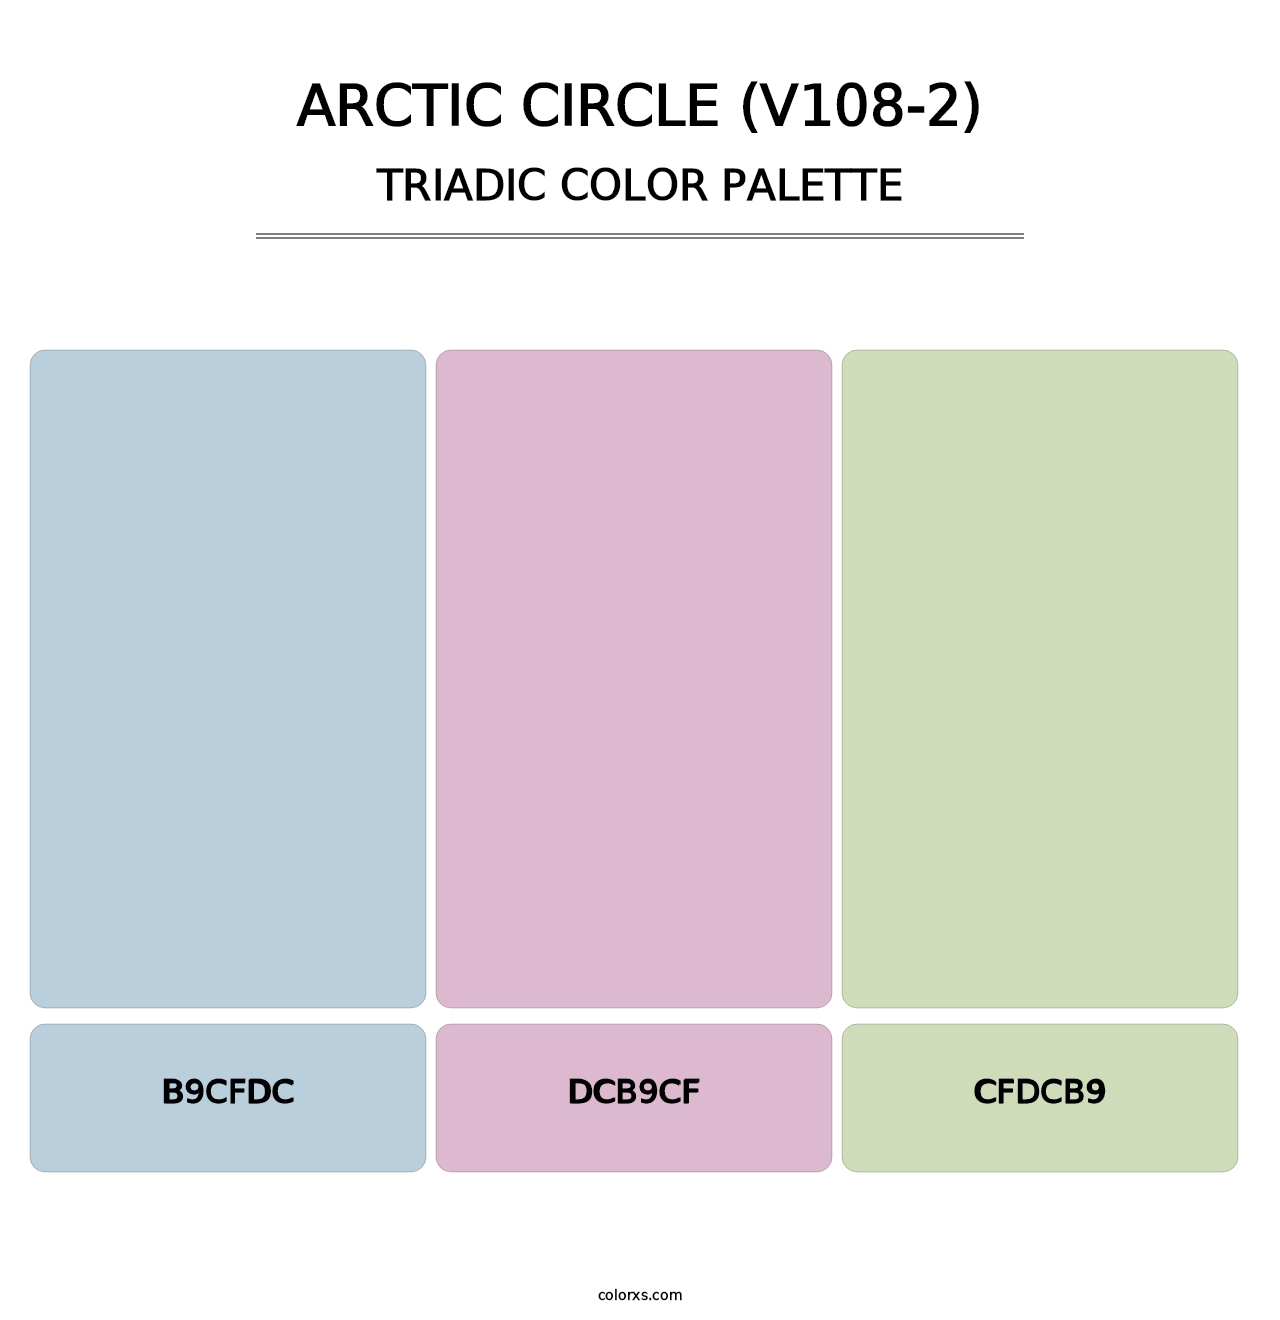 Arctic Circle (V108-2) - Triadic Color Palette